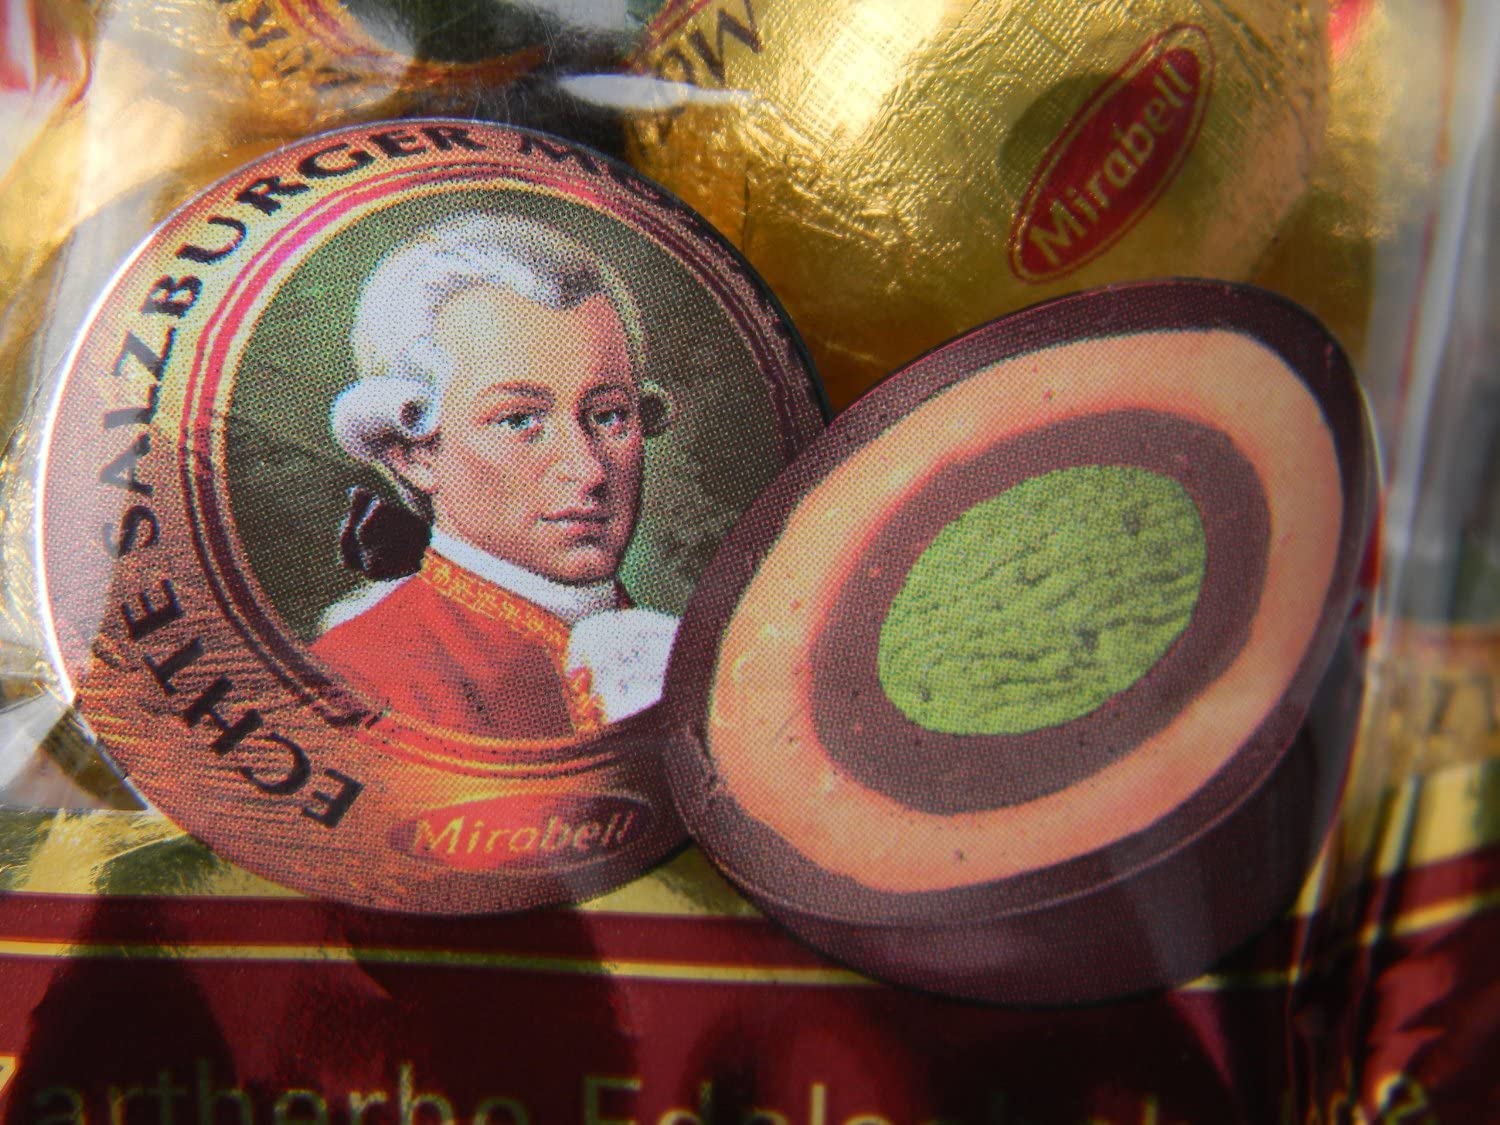 Mozart balls maker goes bust